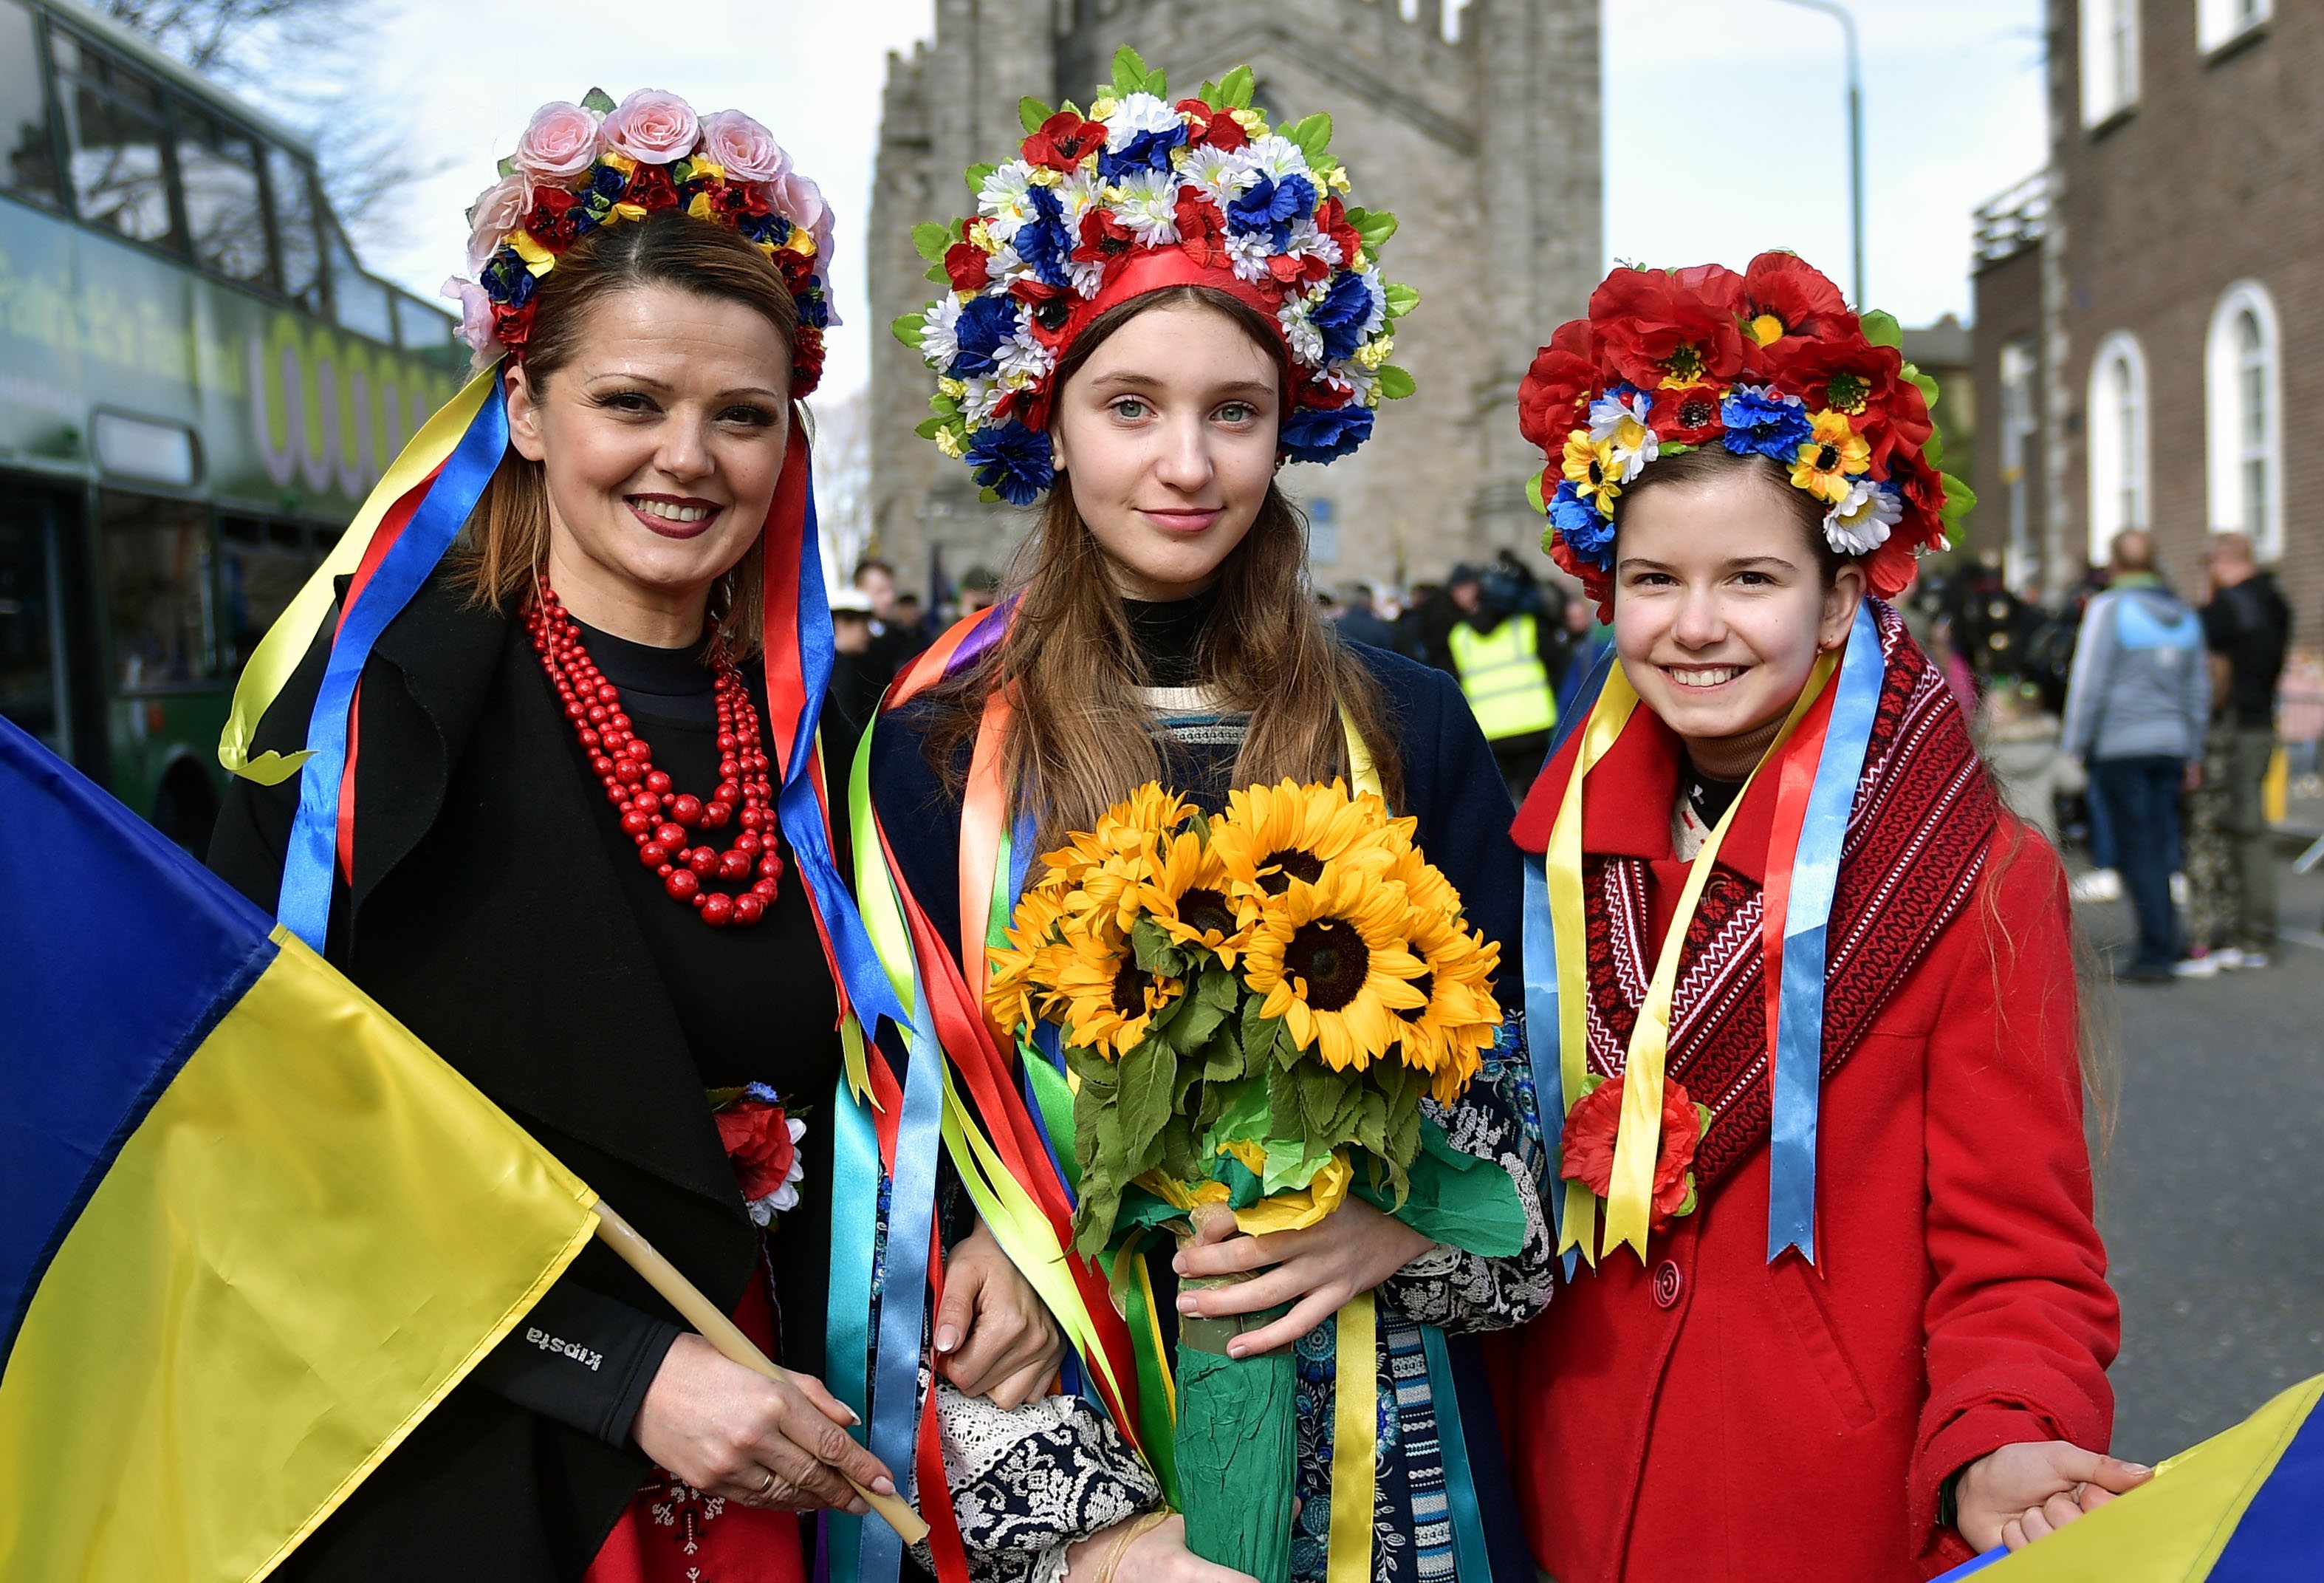 Durante a celebração do Dia de São Patrícia em Dublin, a comunidade ucraniana aproveitou o momento para enviar uma mensagem de apoio à Ucrânia